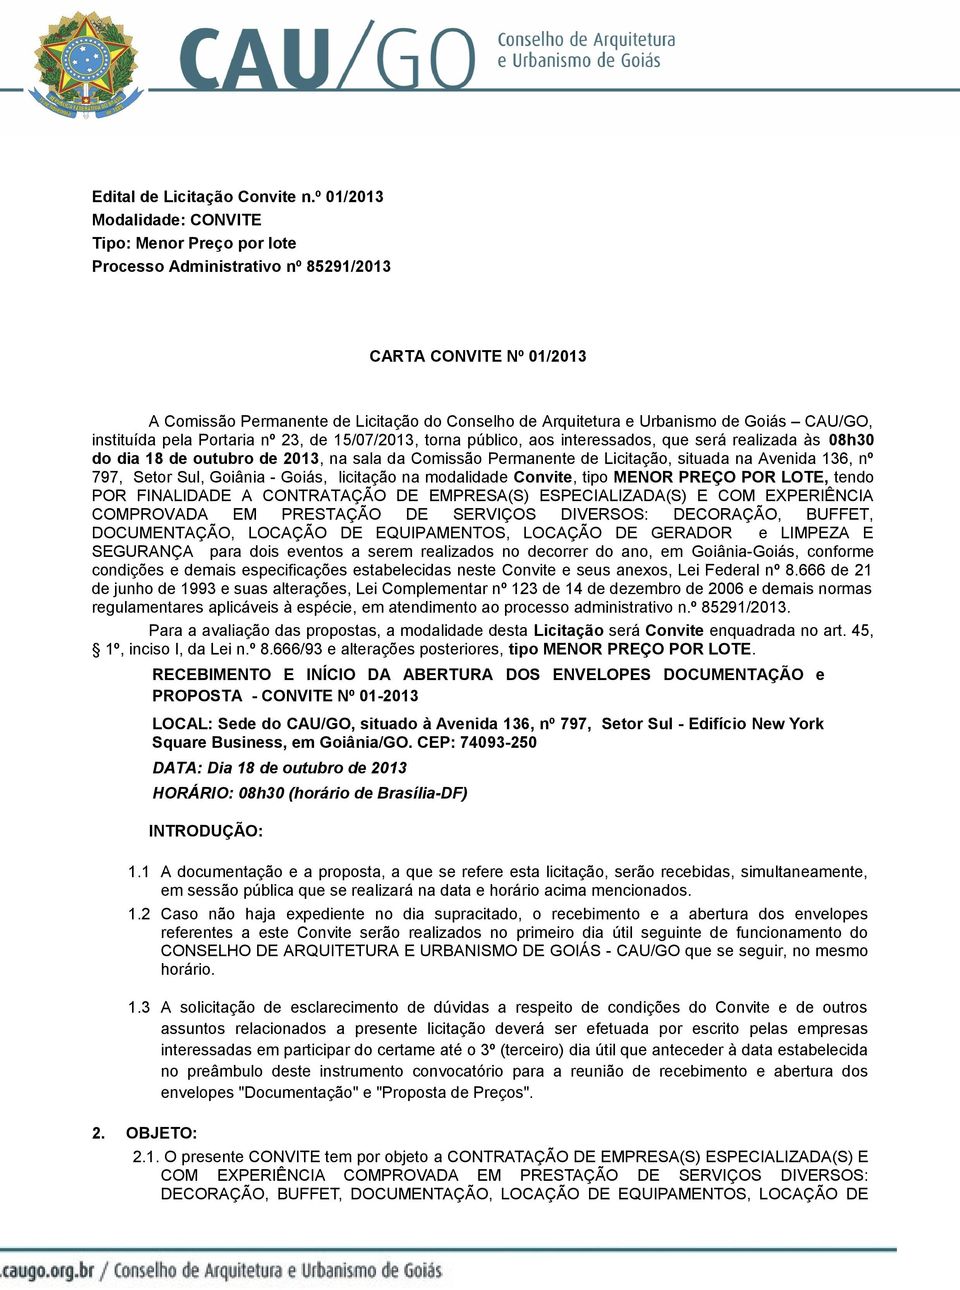 Goiás CAU/GO, instituída pela Portaria nº 23, de 15/07/2013, torna público, aos interessados, que será realizada às 08h30 do dia 18 de outubro de 2013, na sala da Comissão Permanente de Licitação,